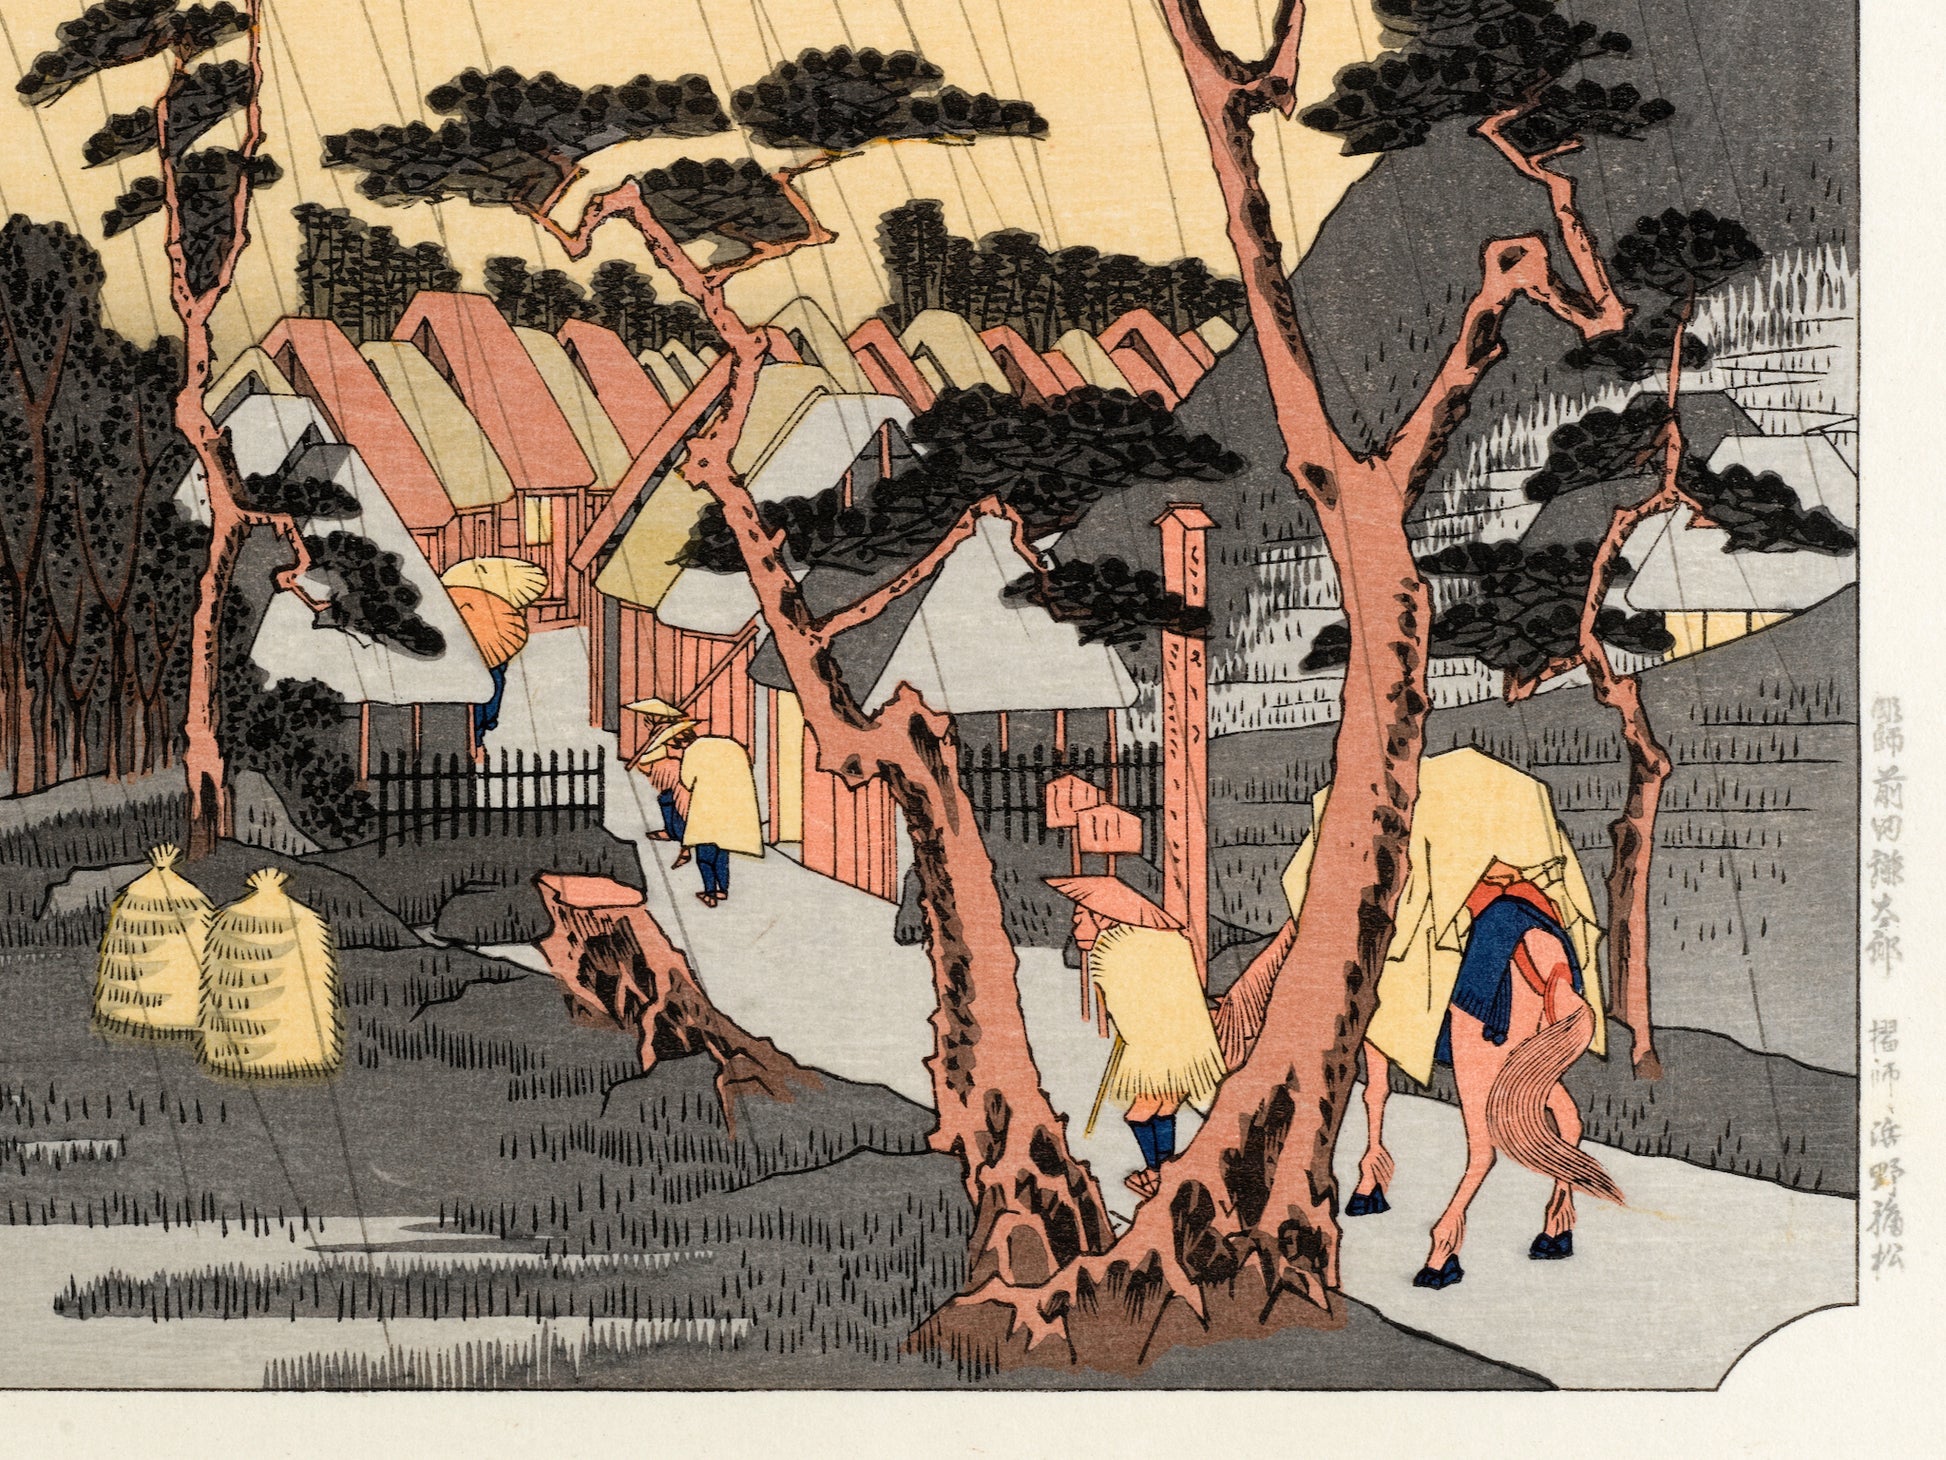 estampe japonaise paysage de Hiroshige, des pèlerins arrvient sous la pluie à la station Oiso du Tokaido, un homme avec un chapeau tirant son cheval lourdement chargé arrive au village, des arbres en premier plan